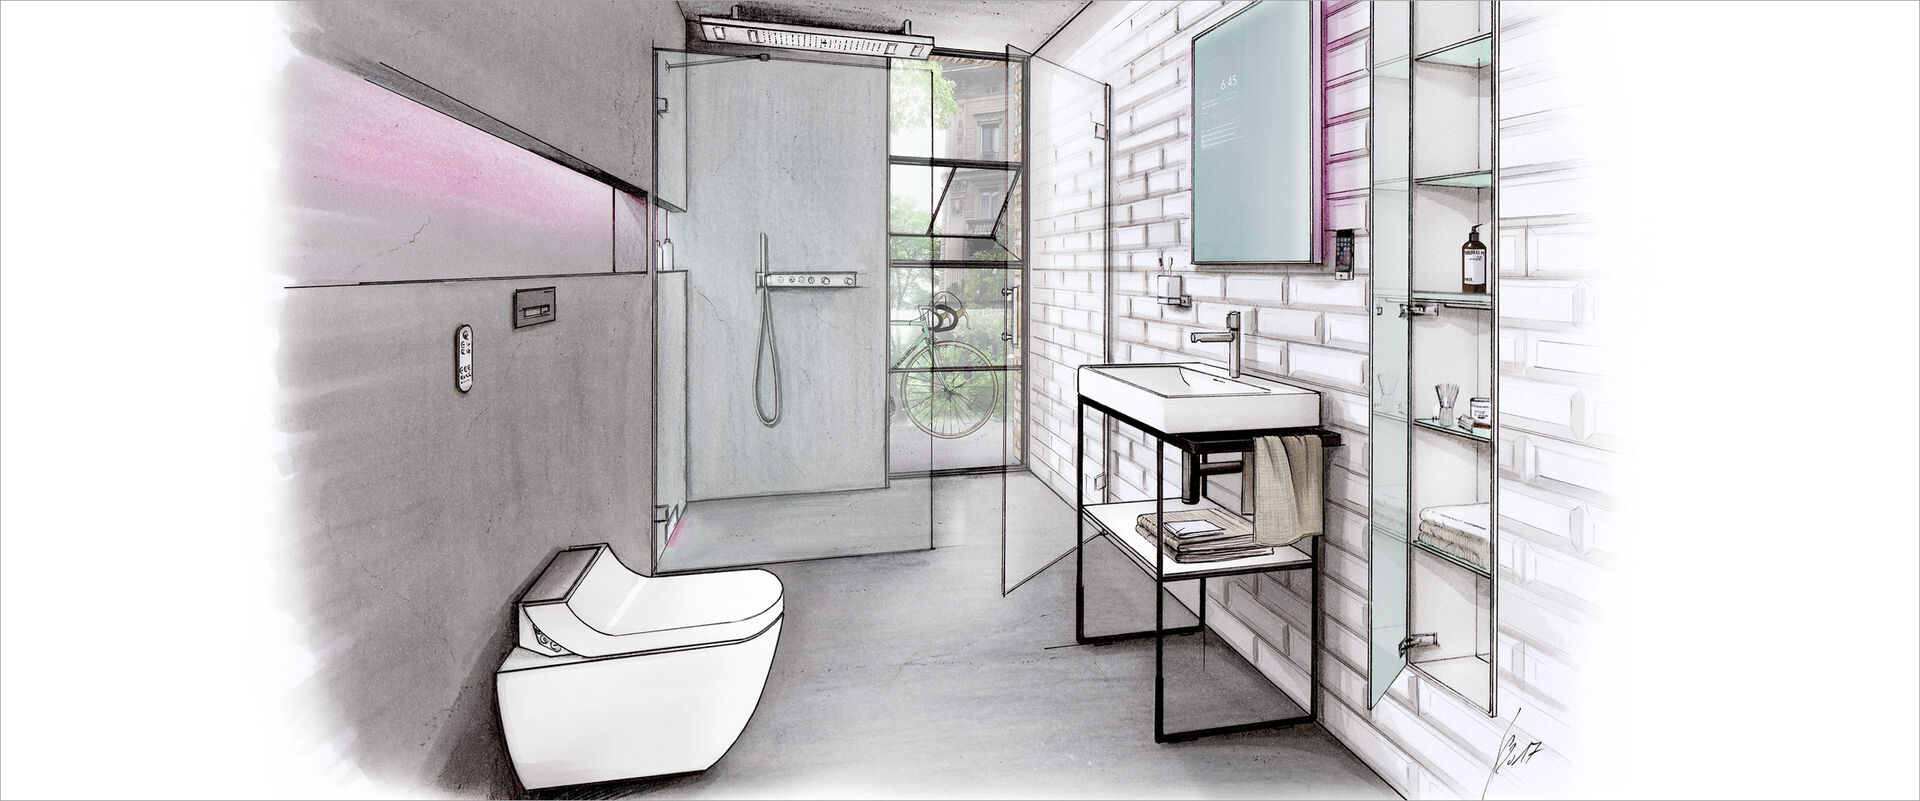 Zeichnung einer Badplanung für ein Männerbad. Technische Innovationen, Dusch-wc, begehbare Dusche, Lichteffekte, Waschplatz und Einbauschrank